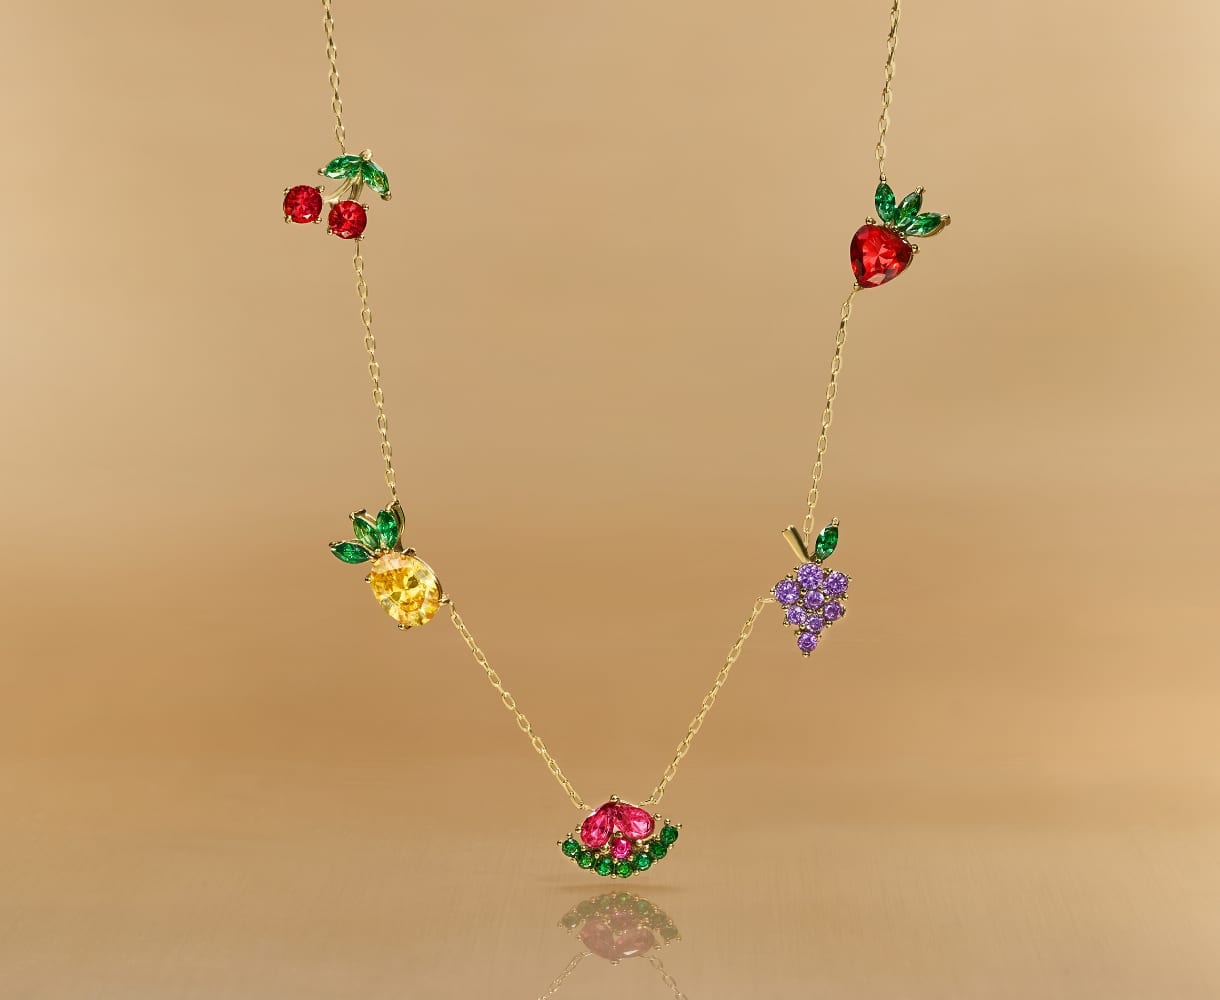 Une chaîne ton or avec cinq décorations à cristaux en forme de fruits.